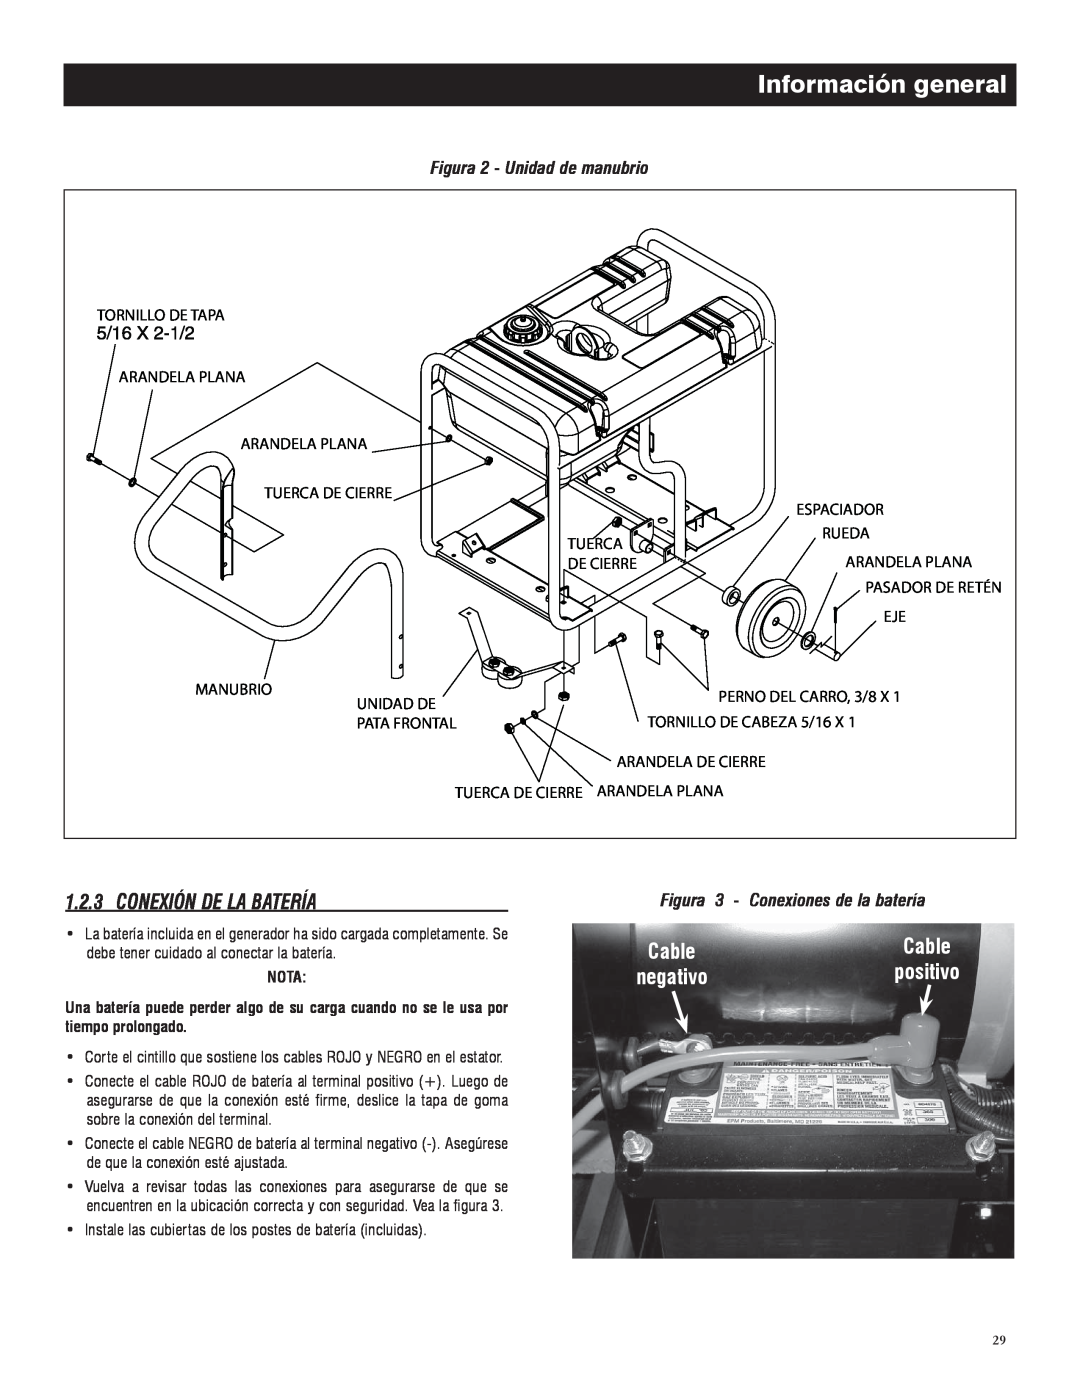 Generac 005735-0 Conexión De La Batería, Información general, Figura 2 - Unidad de manubrio, positivo, Cable, negativo 